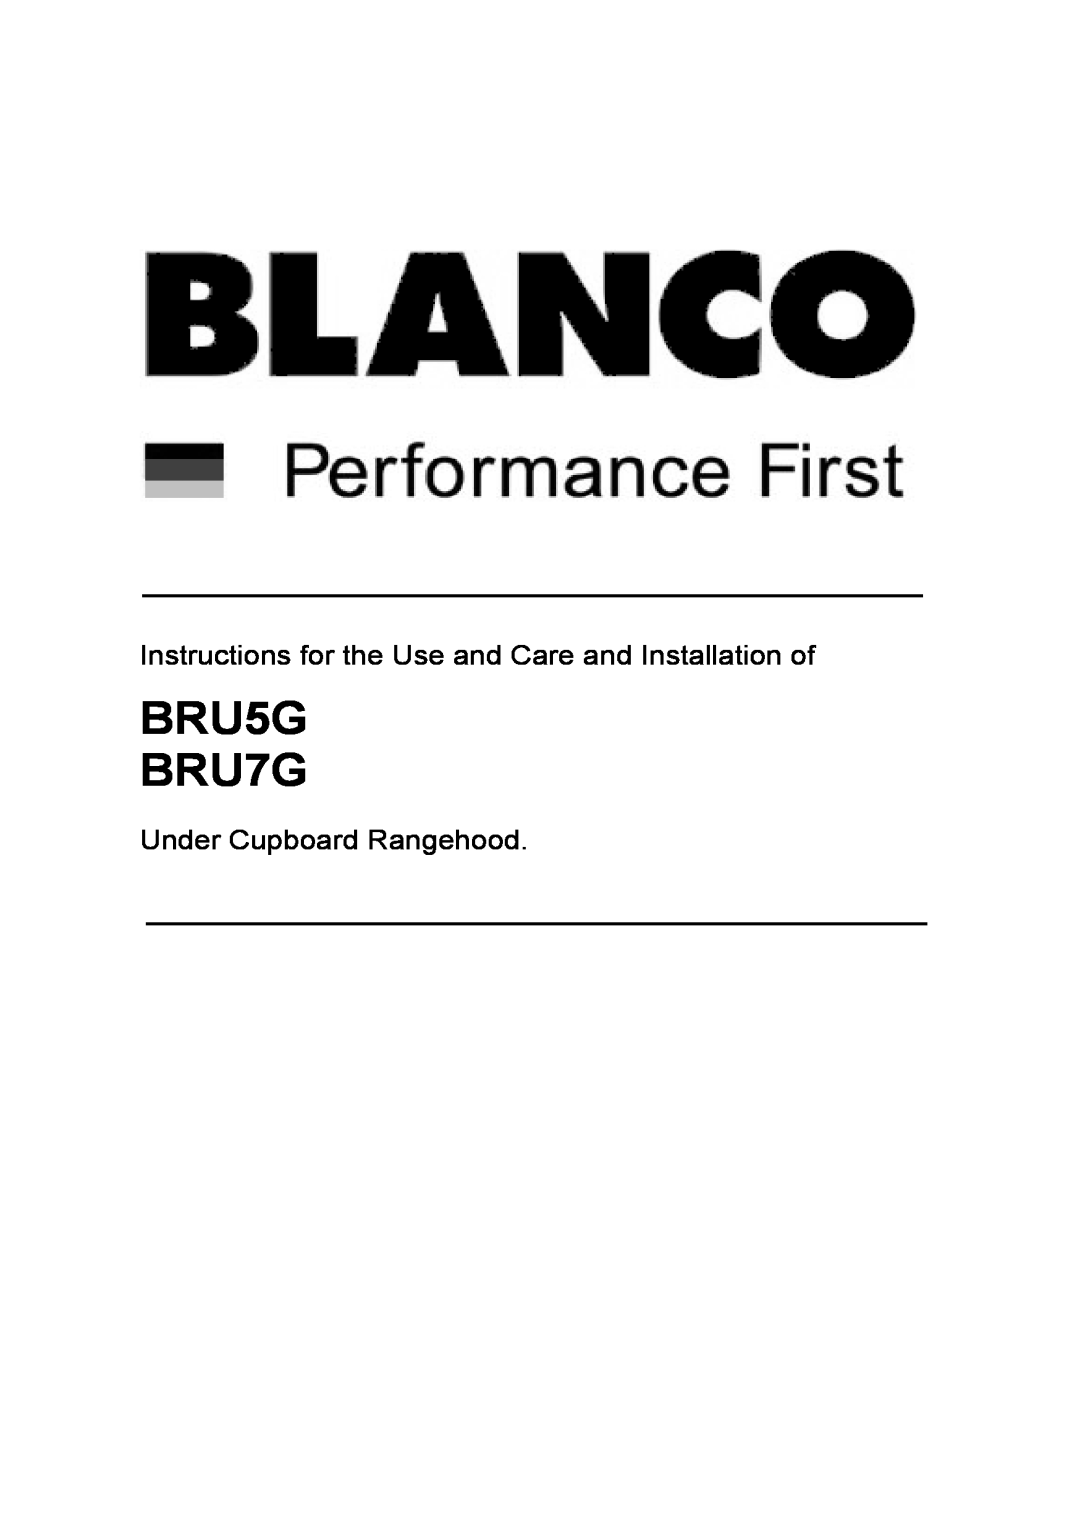 Blanco manual Under Cupboard Rangehood, BRU5G BRU7G 